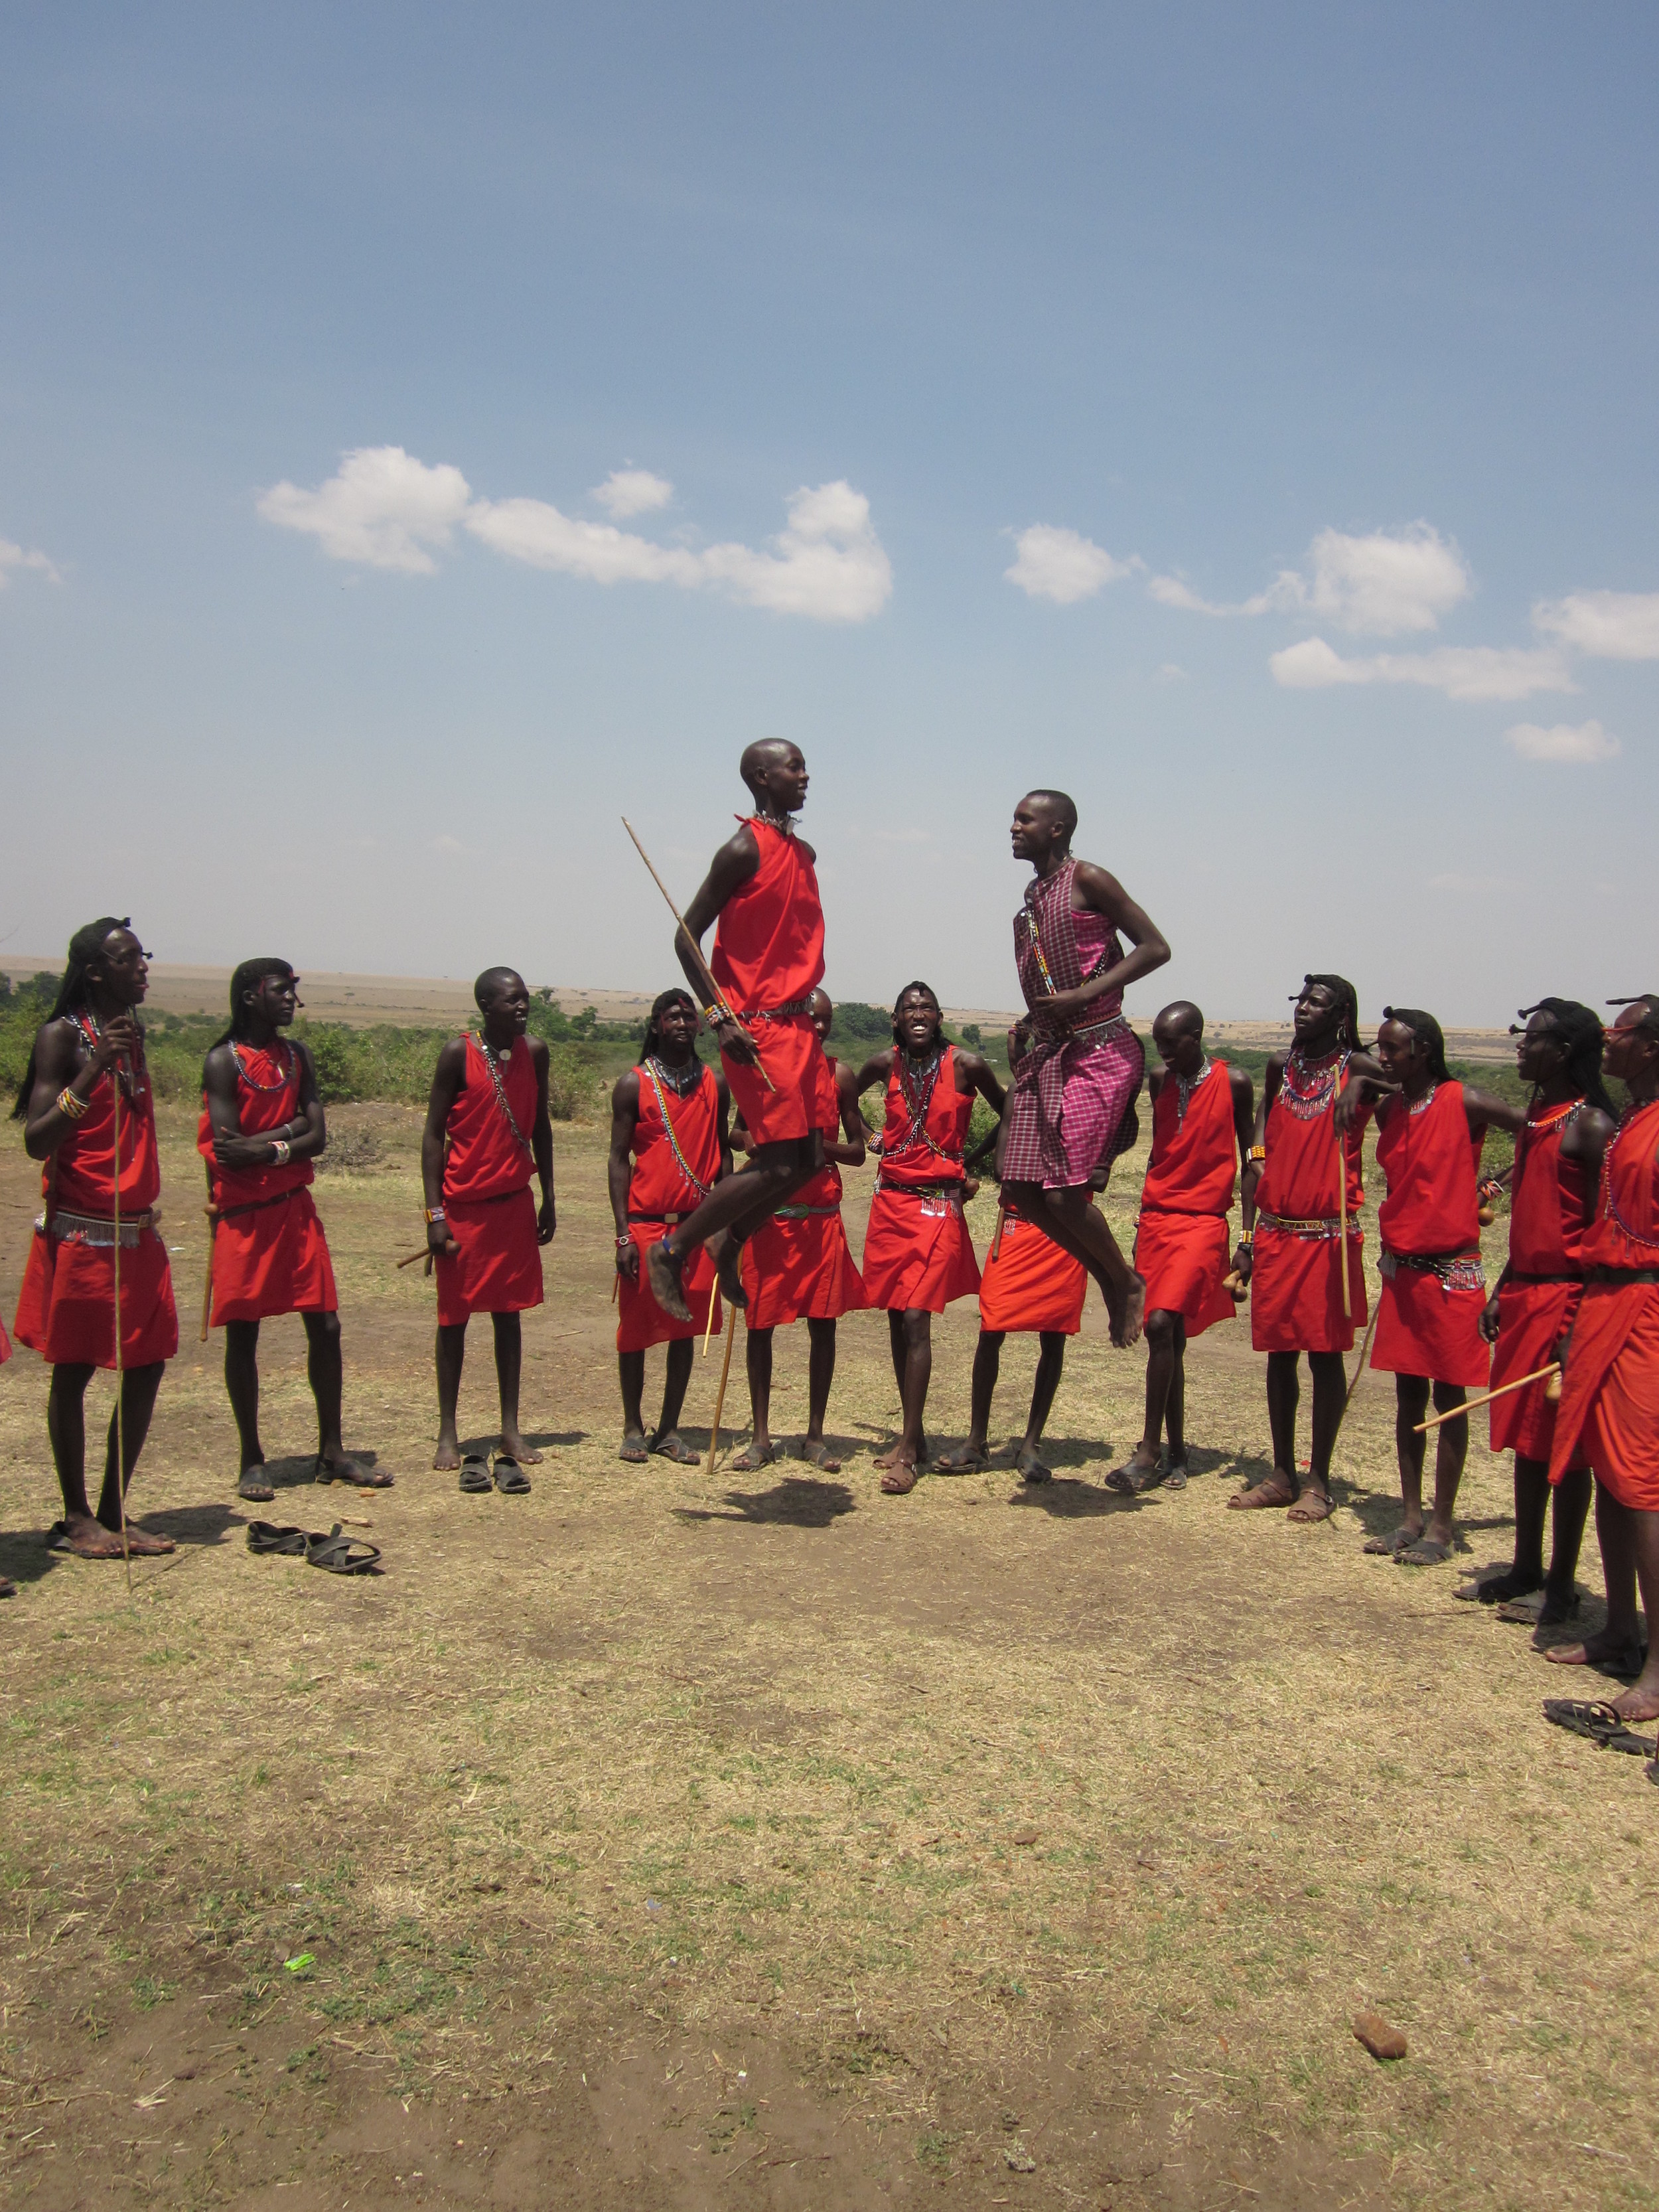 Masai Mara Safari Village